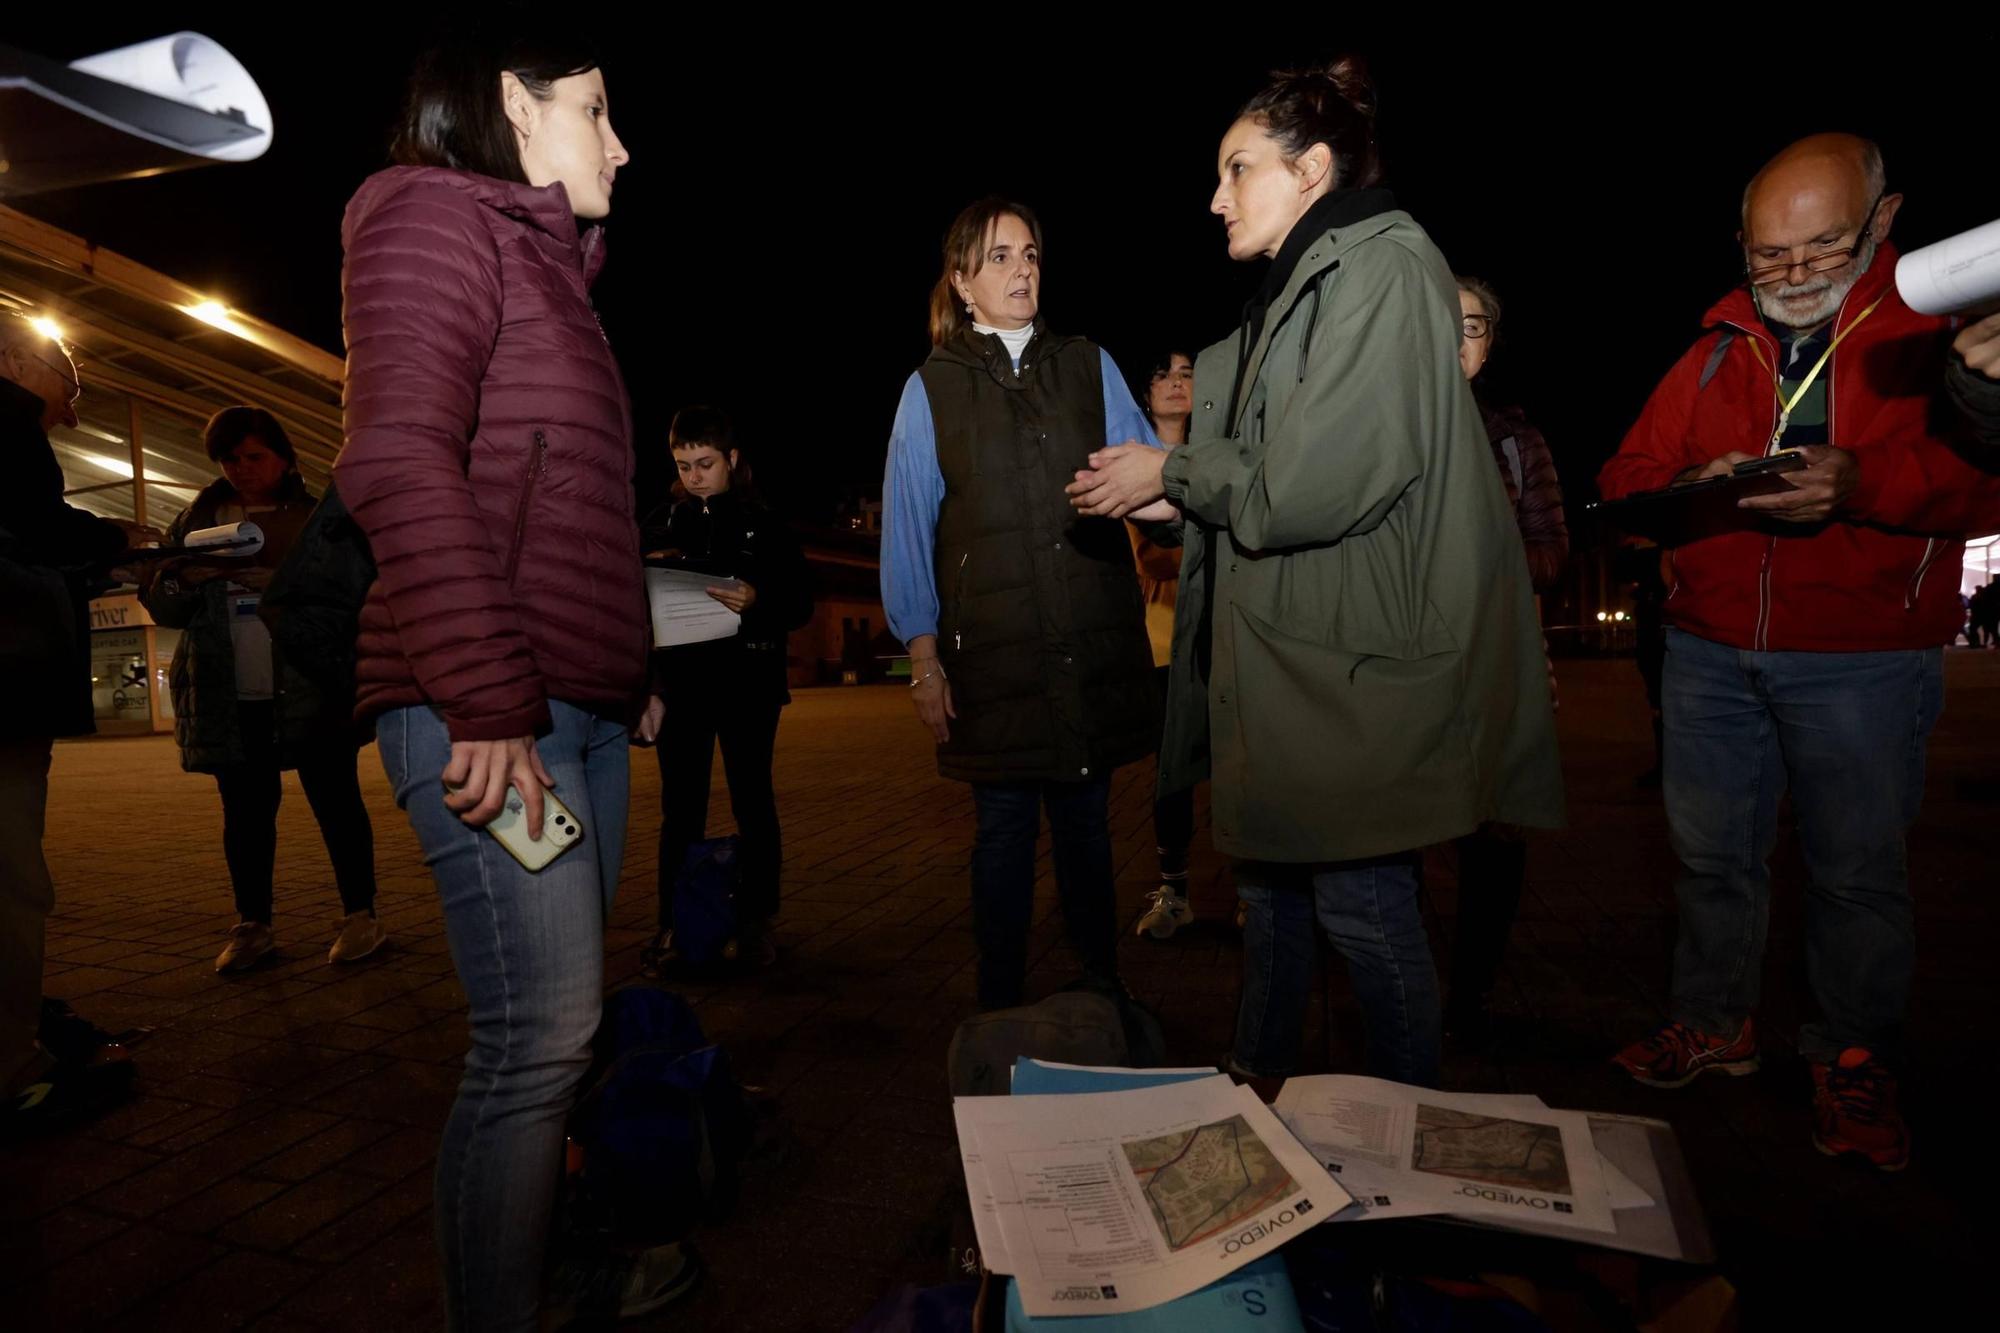 Primer recuento de personas sin hogar en Oviedo